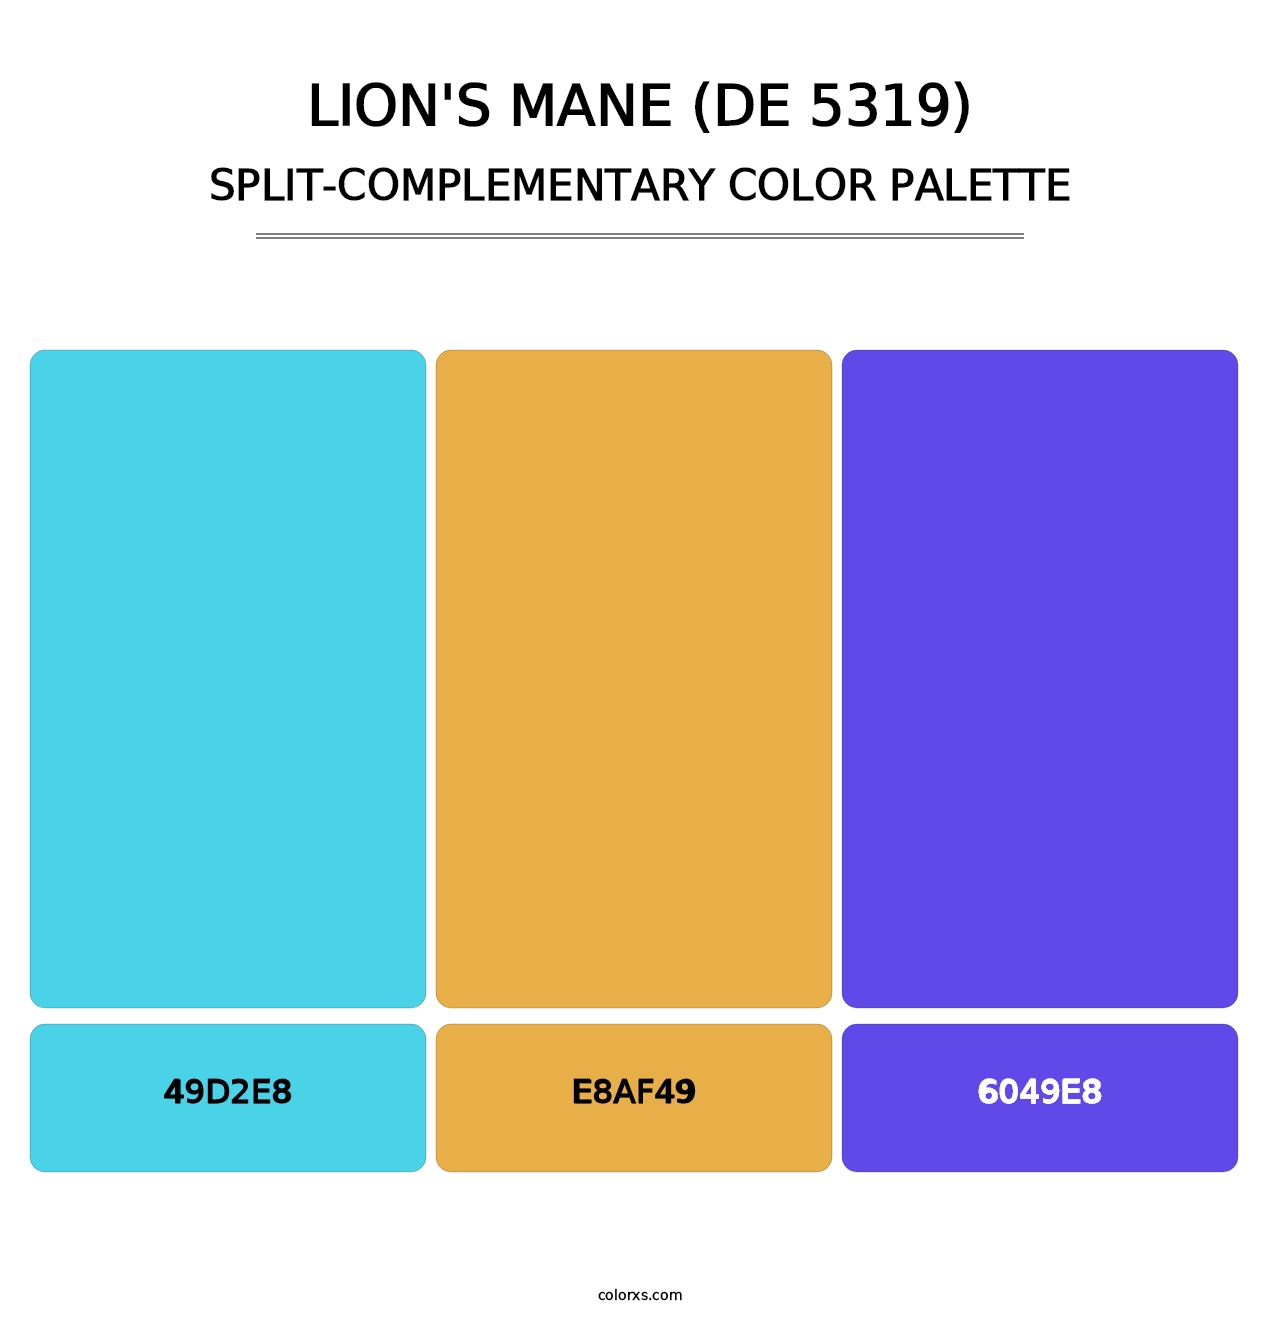 Lion's Mane (DE 5319) - Split-Complementary Color Palette